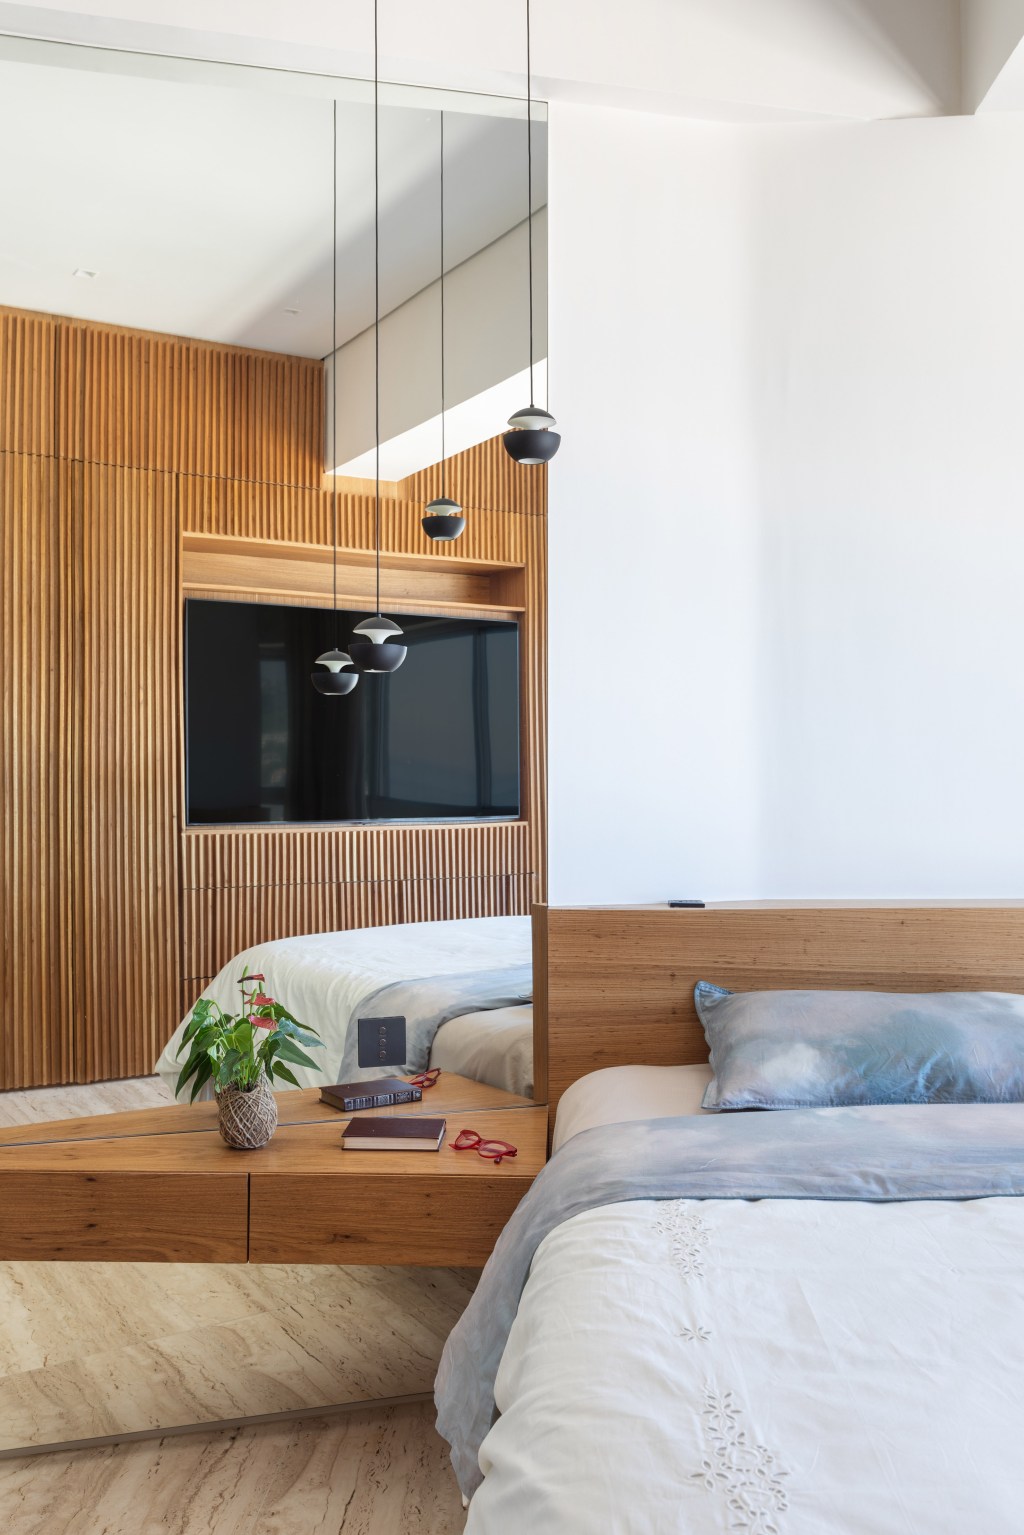 Apê com 48 m² recebe decoração contemporânea, minimalista e atemporal. Projeto do Rodrigo Cardoso. Na foto, espelho ao lado da cama de casal